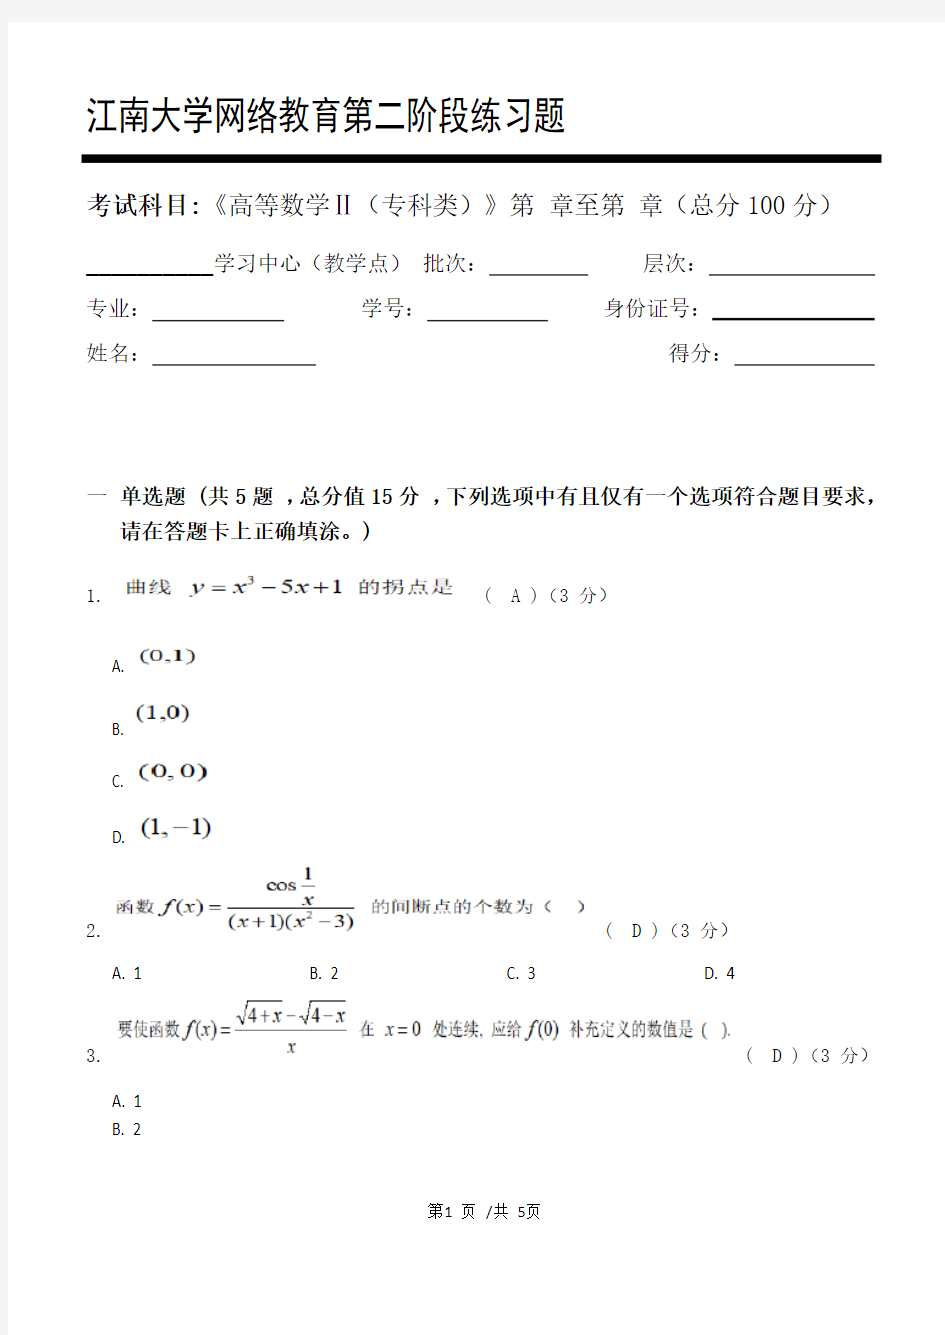 高等数学Ⅱ(专科类)_第二阶段练习   20年江南大学考试题库及答案 共三个阶段,这是其中一个阶段。